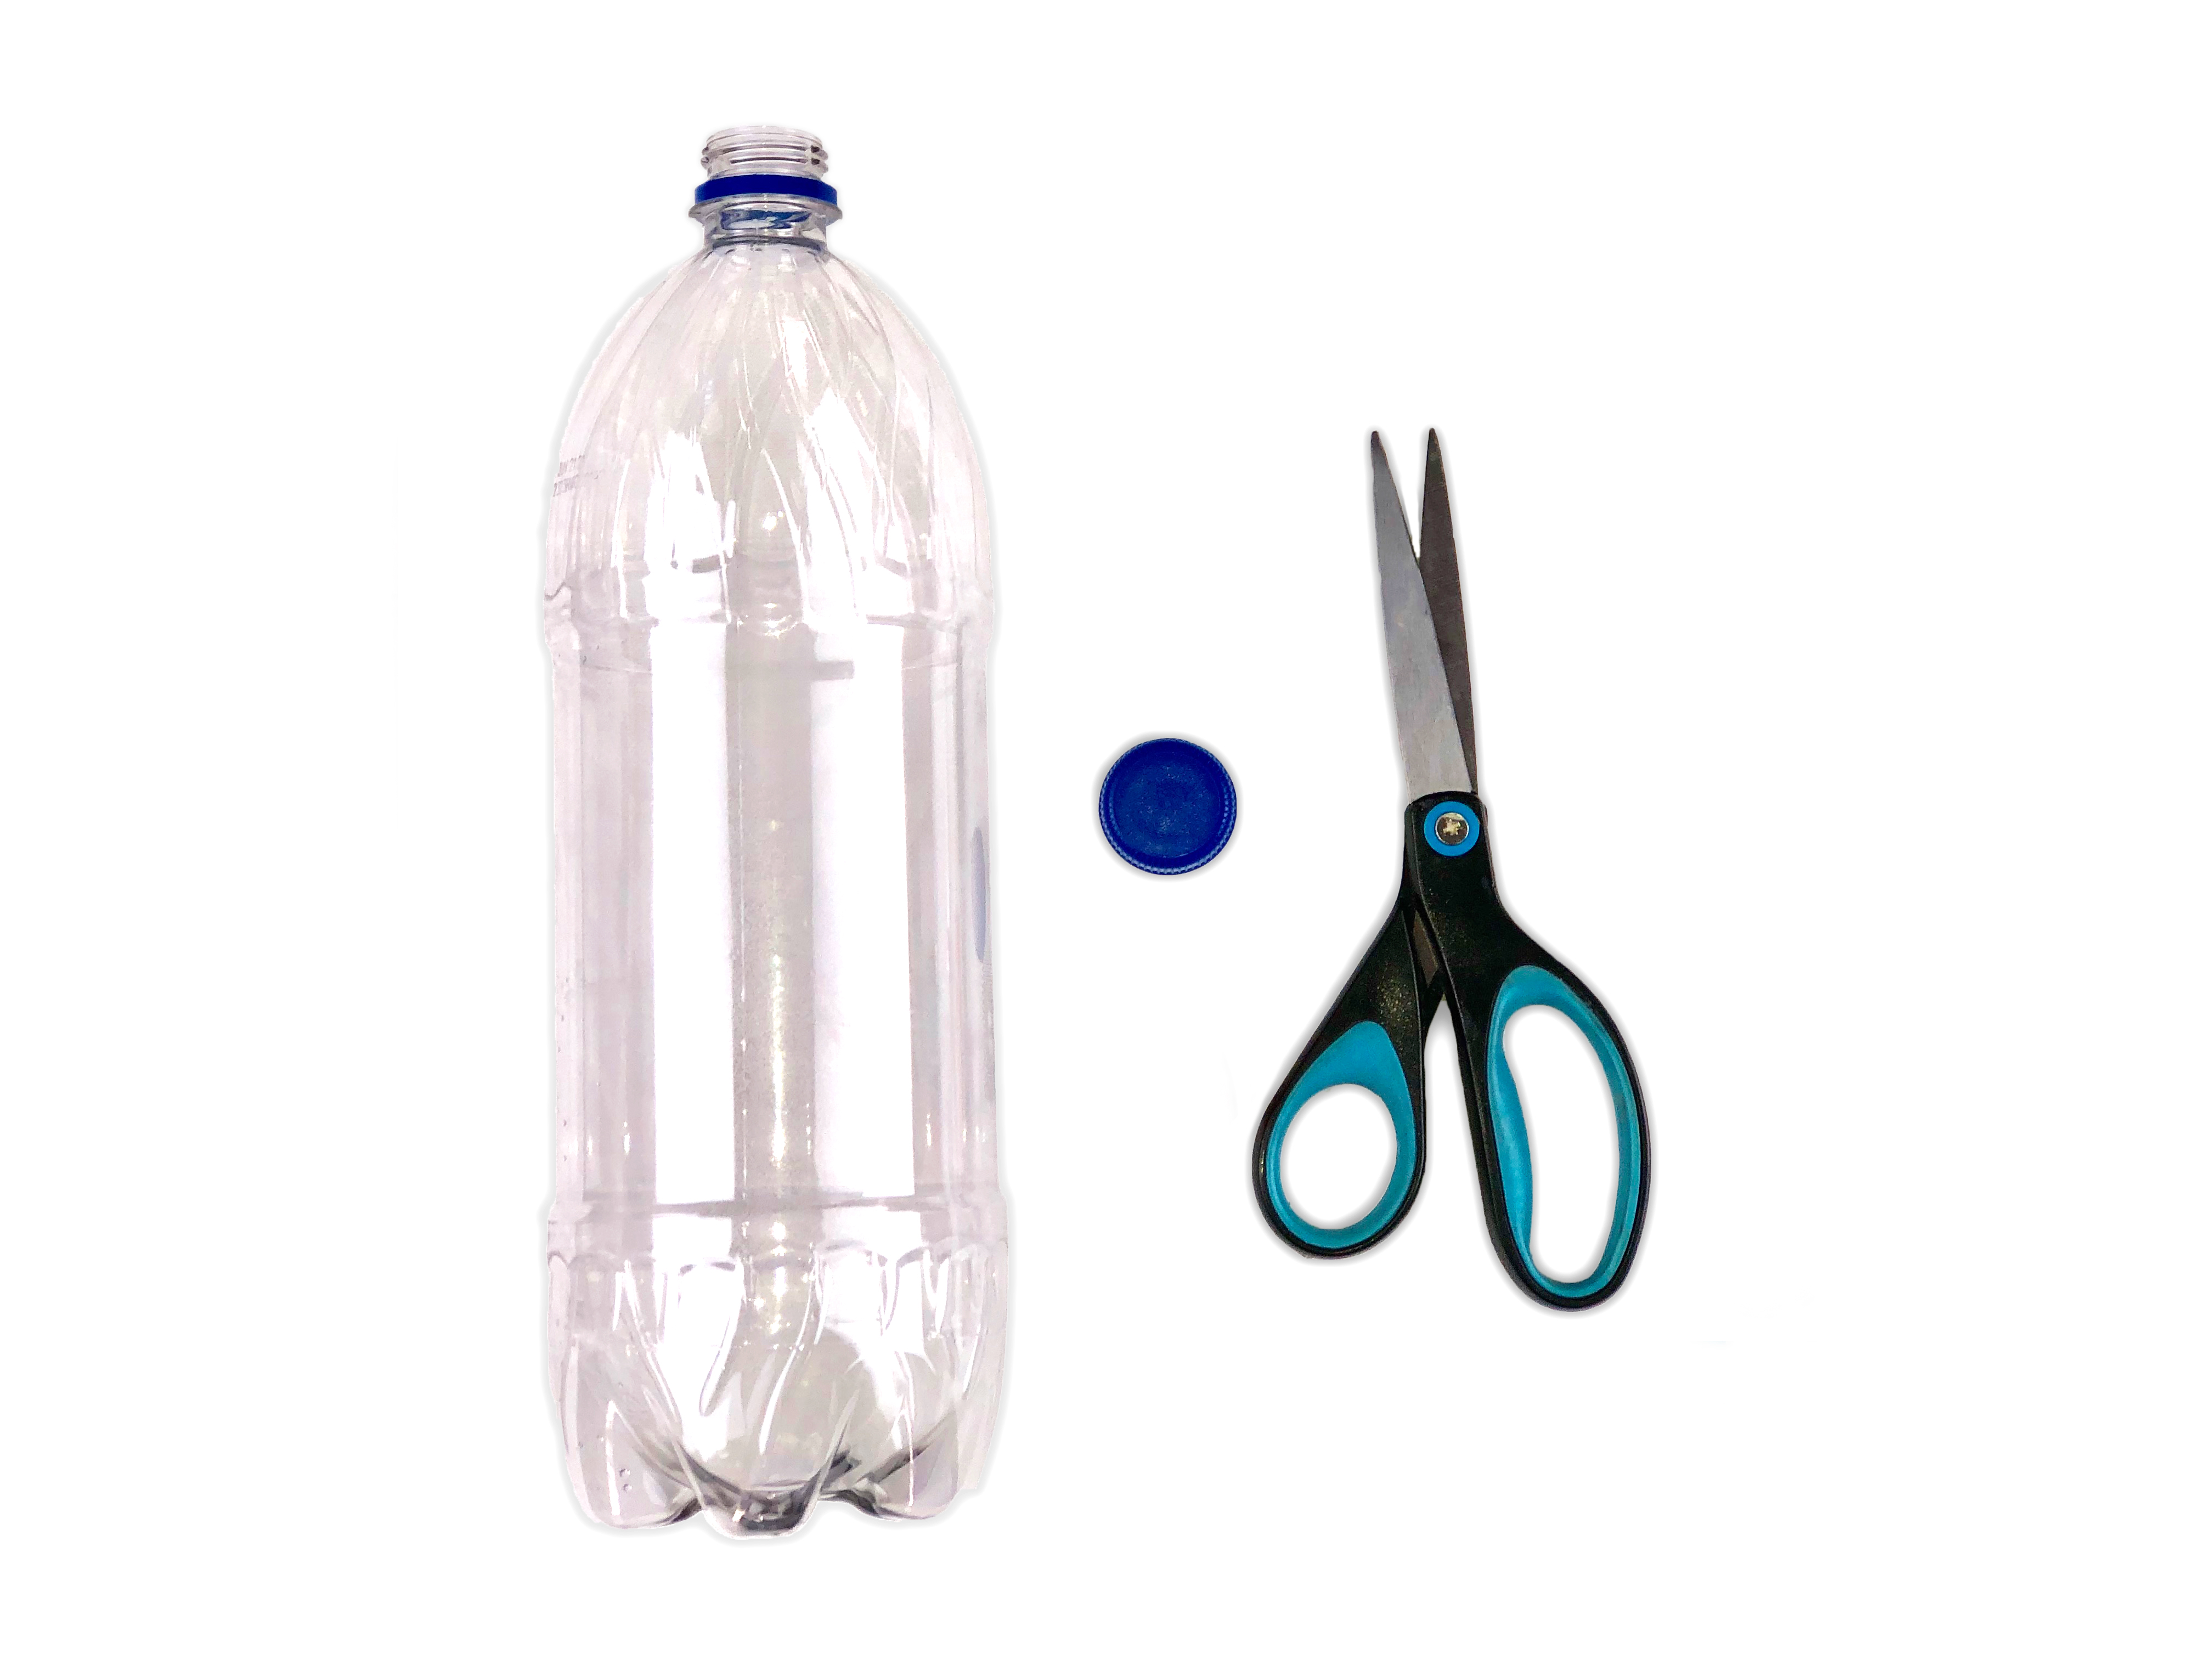 Plastic Bottle Planter Craft materials